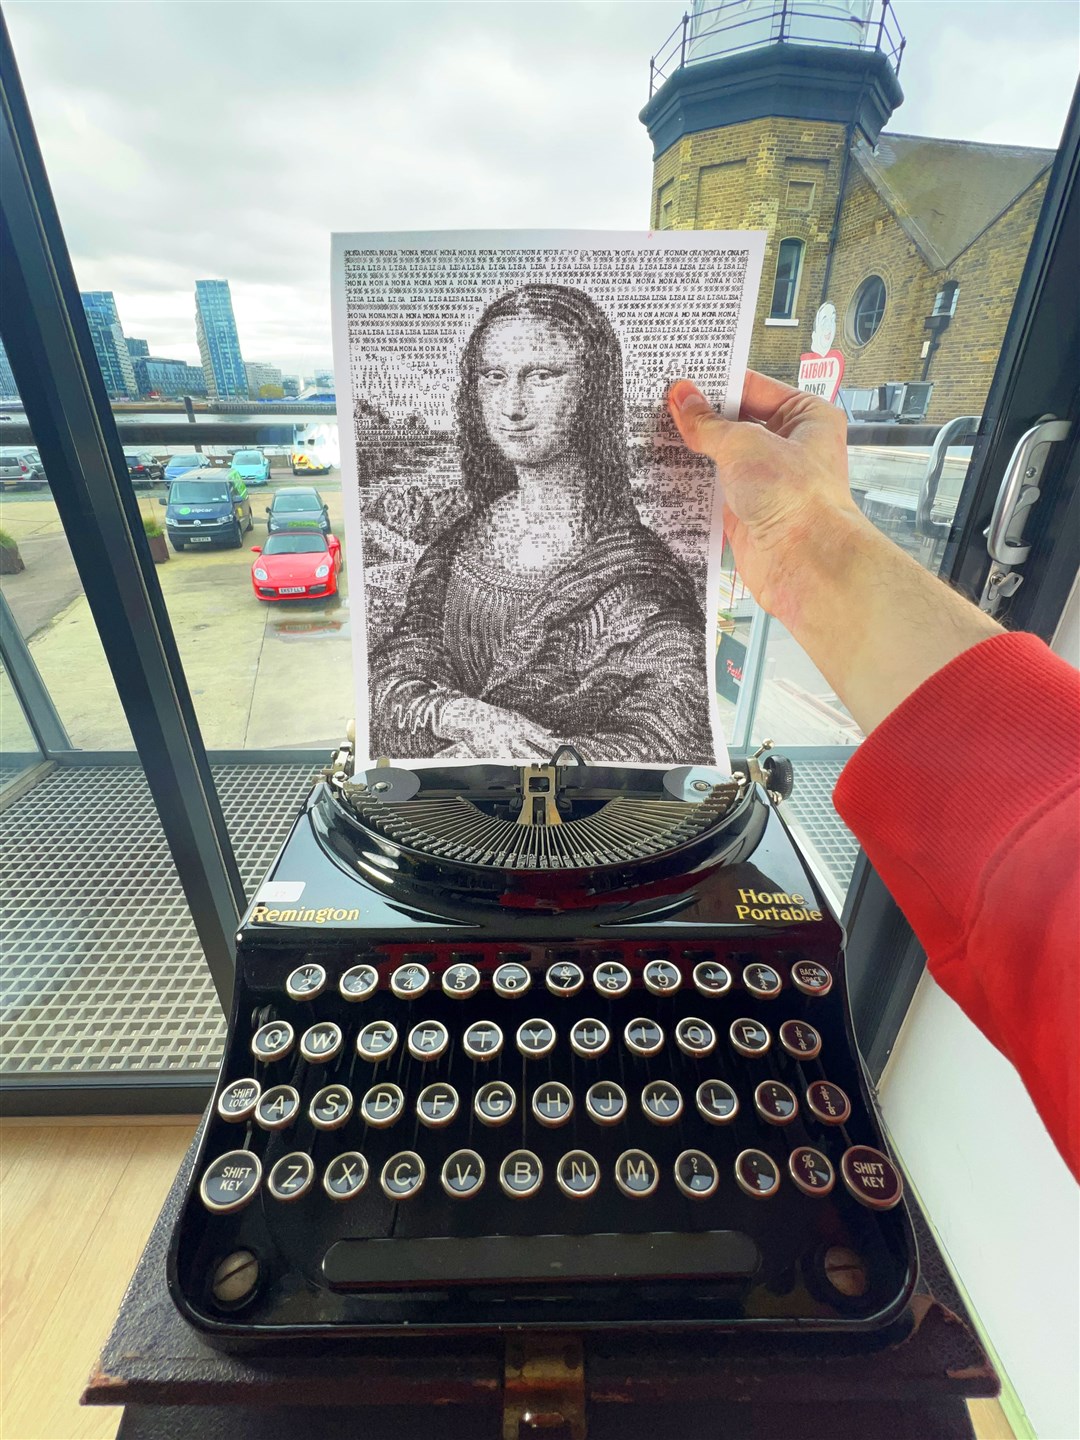 Typewriter Art of Mona Lisa with a 1921 Remington Portable Typewriter (James Cook)